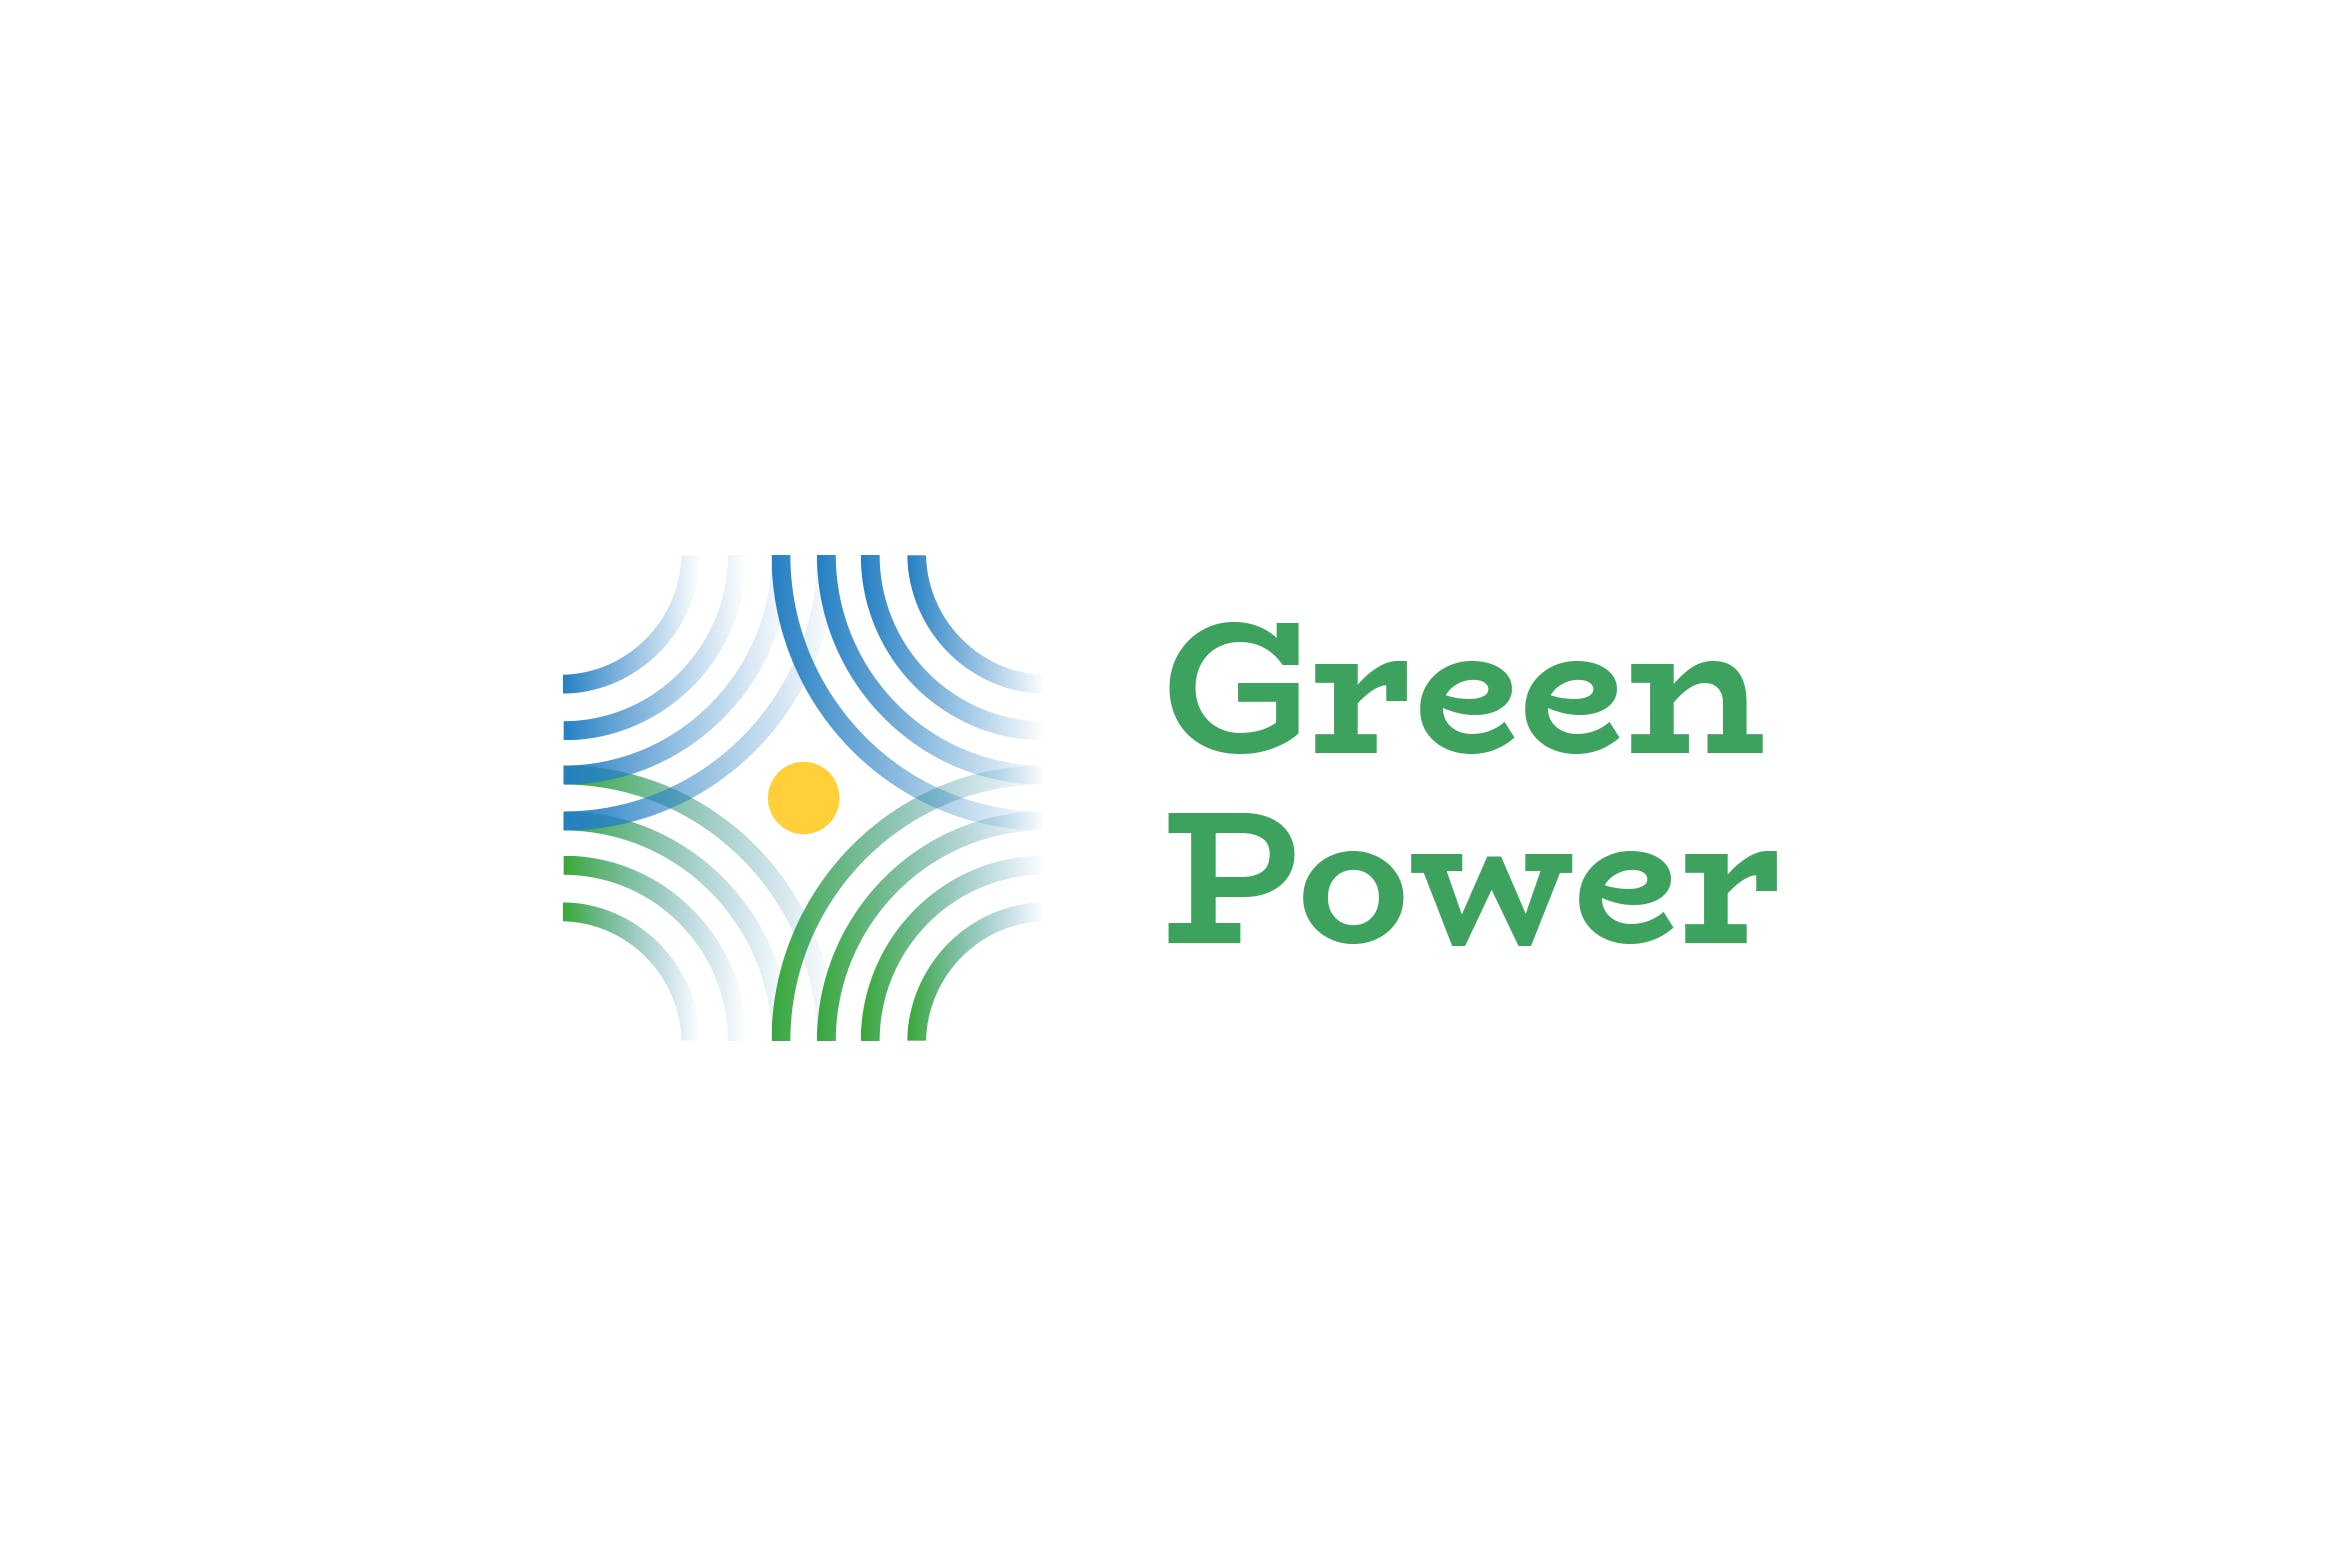 绿色能源&新能源品牌Logo设计素材库精选模板 Green Power Logo插图